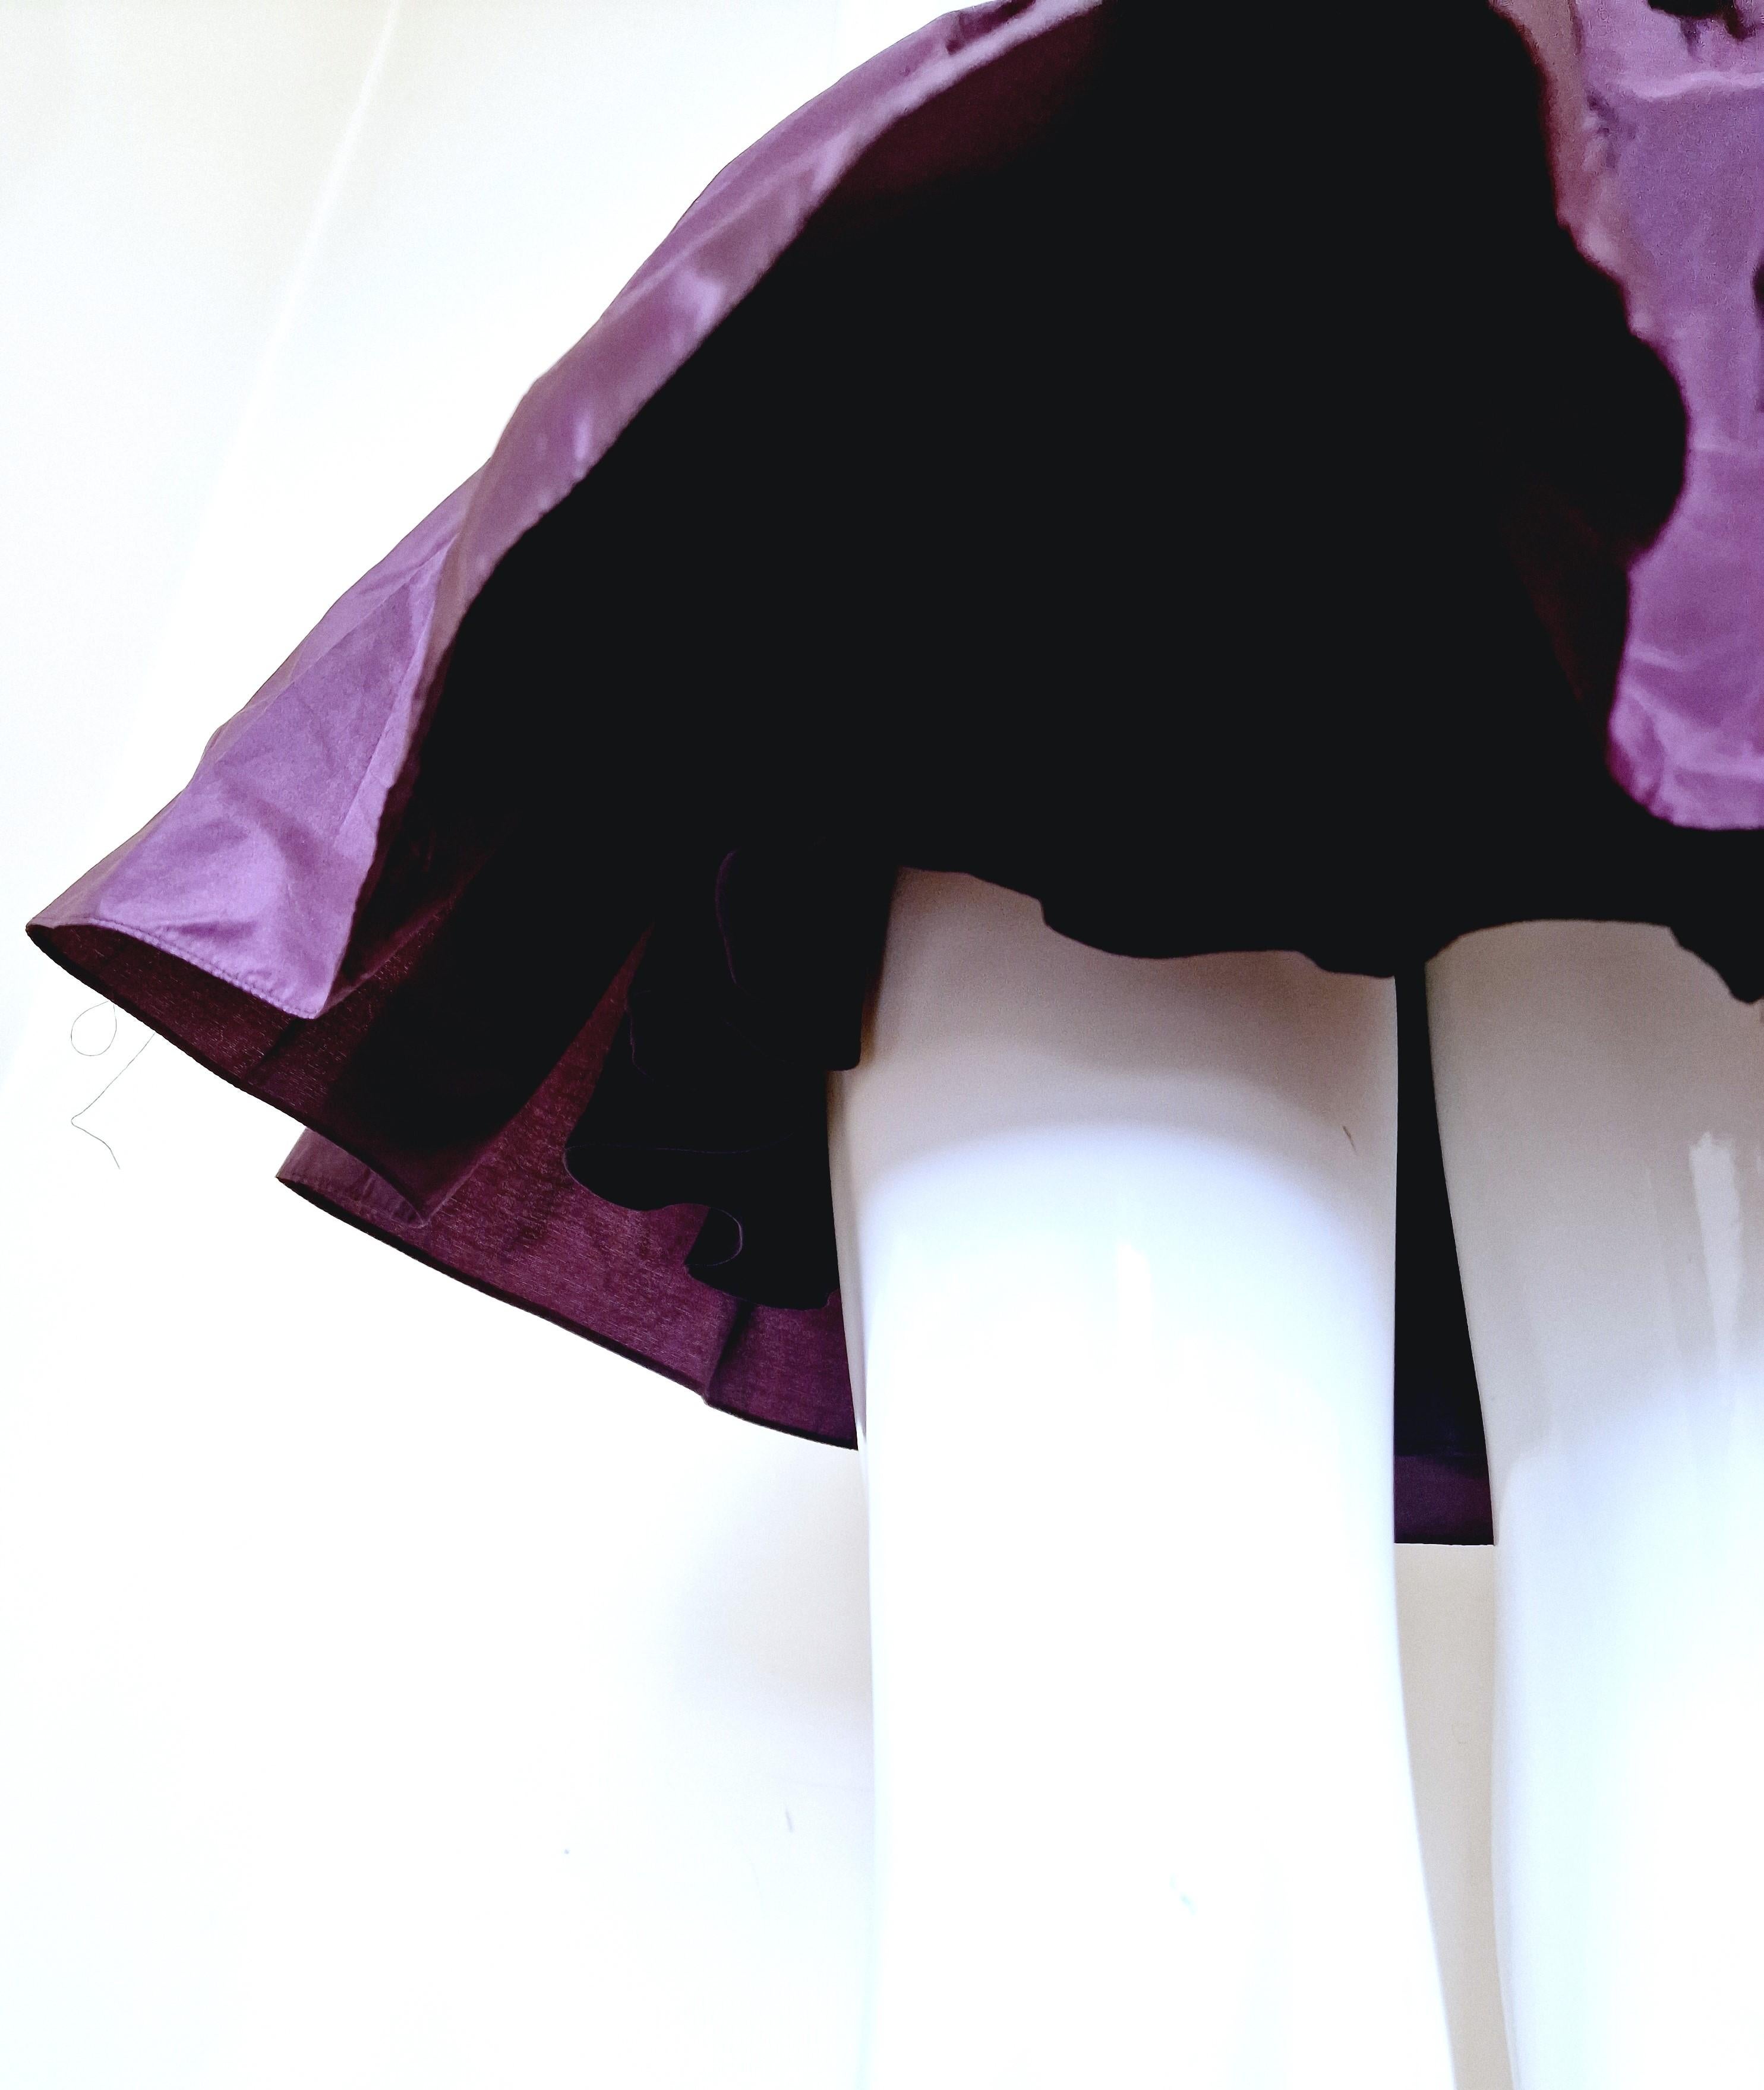 Alexander McQueen Corset Bustier Lace Up Tutu Petticoat Violet Medium Gown Dress For Sale 9